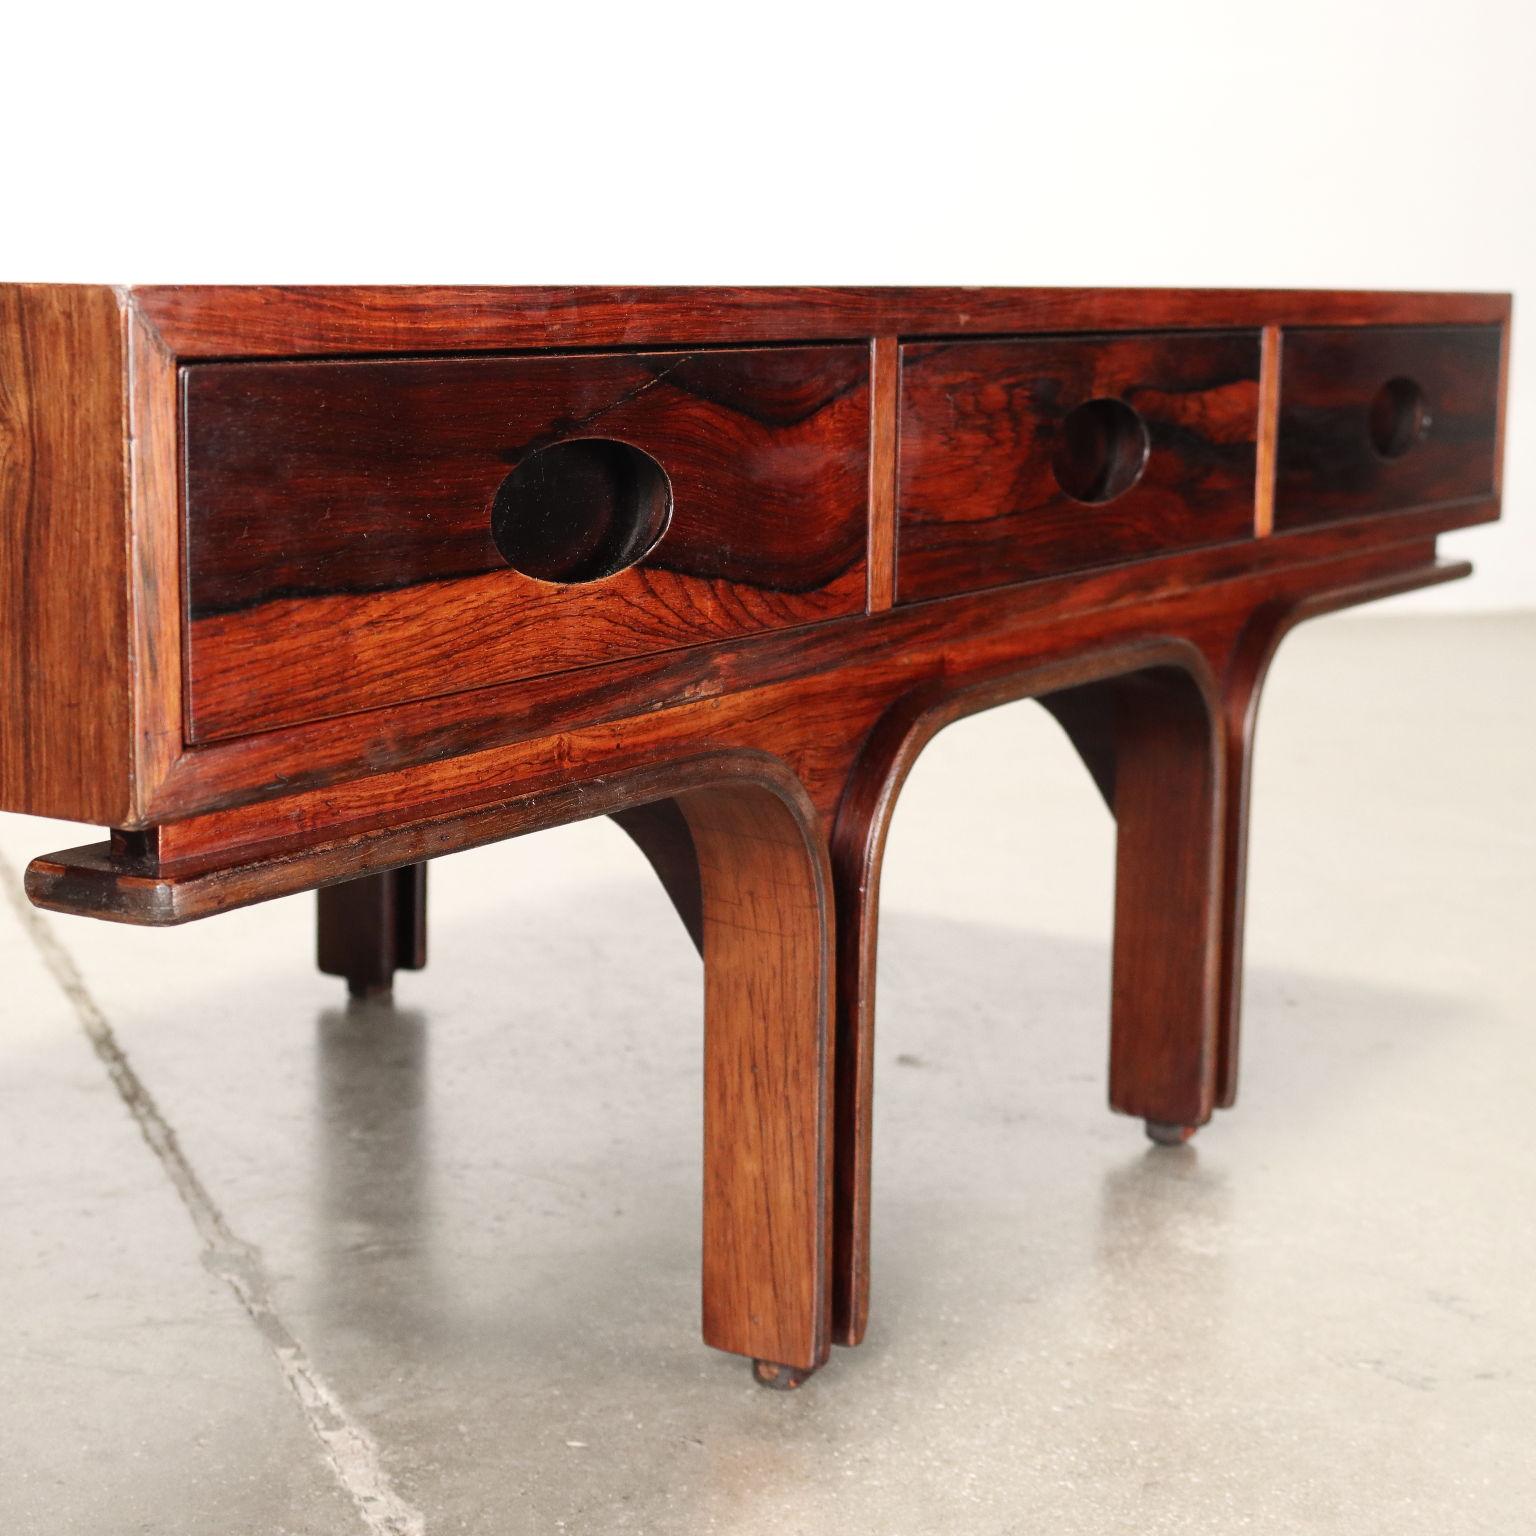 Couchtisch aus den 1960er Jahren, entworfen von Gianfranco Frattini für eine Bernini-Produktion, aus exotischem Holzfurnier mit drei Schubladen unter der Platte. Sehr guter Zustand. Wiederhergestellt.